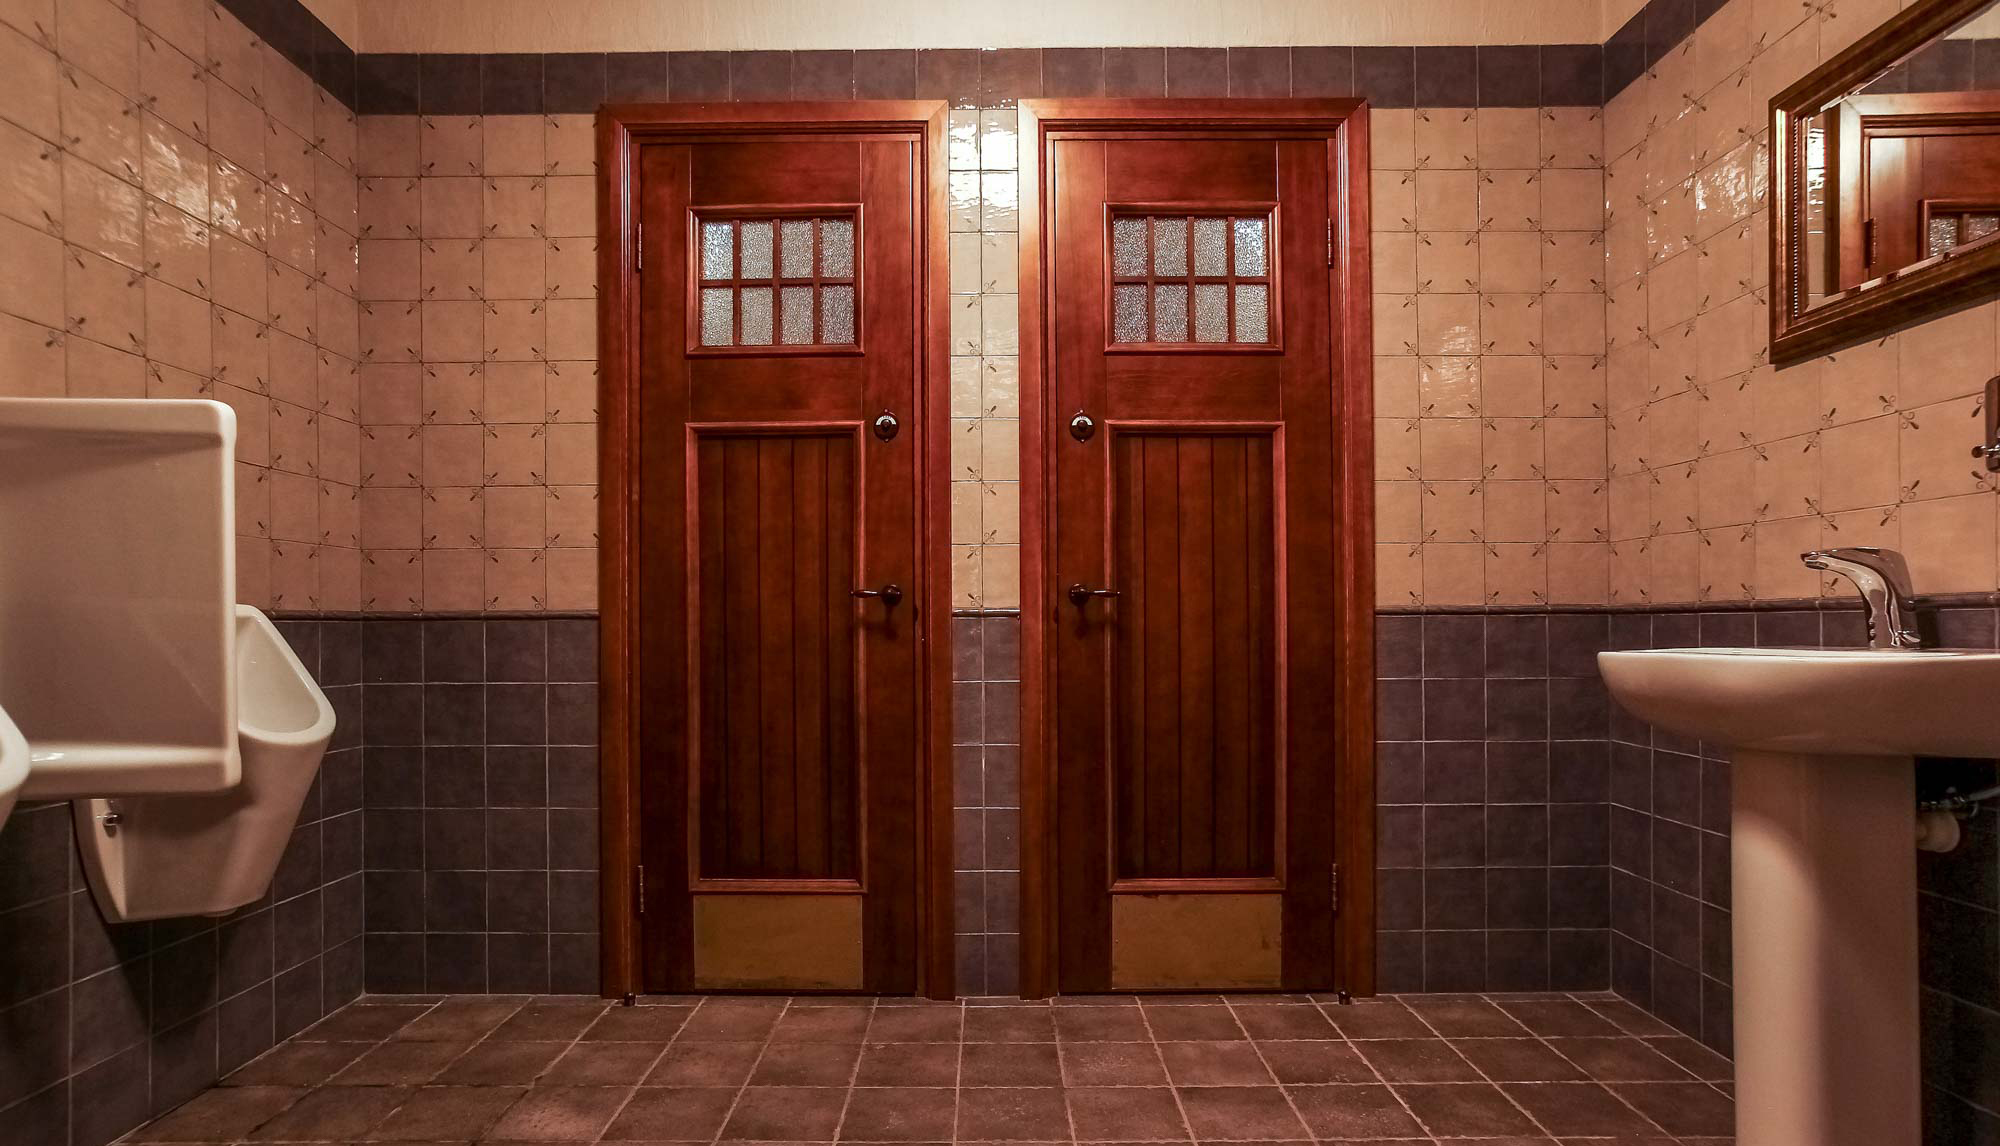 Двери в ванной комнате фото